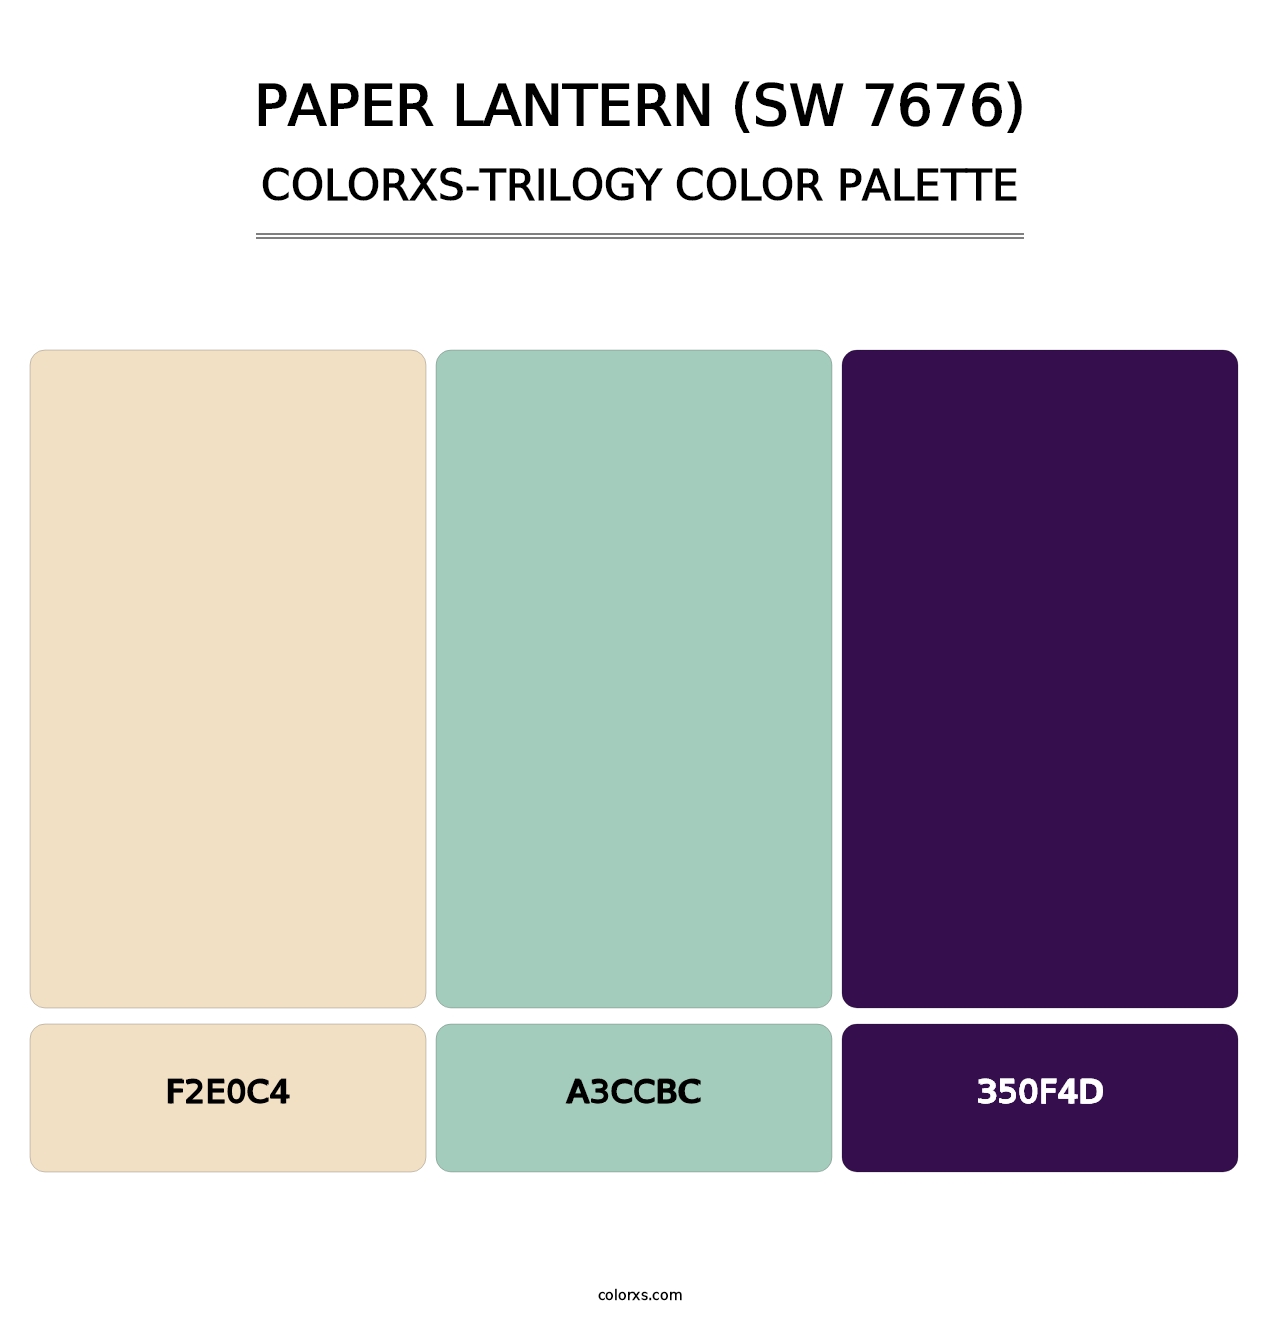 Paper Lantern (SW 7676) - Colorxs Trilogy Palette